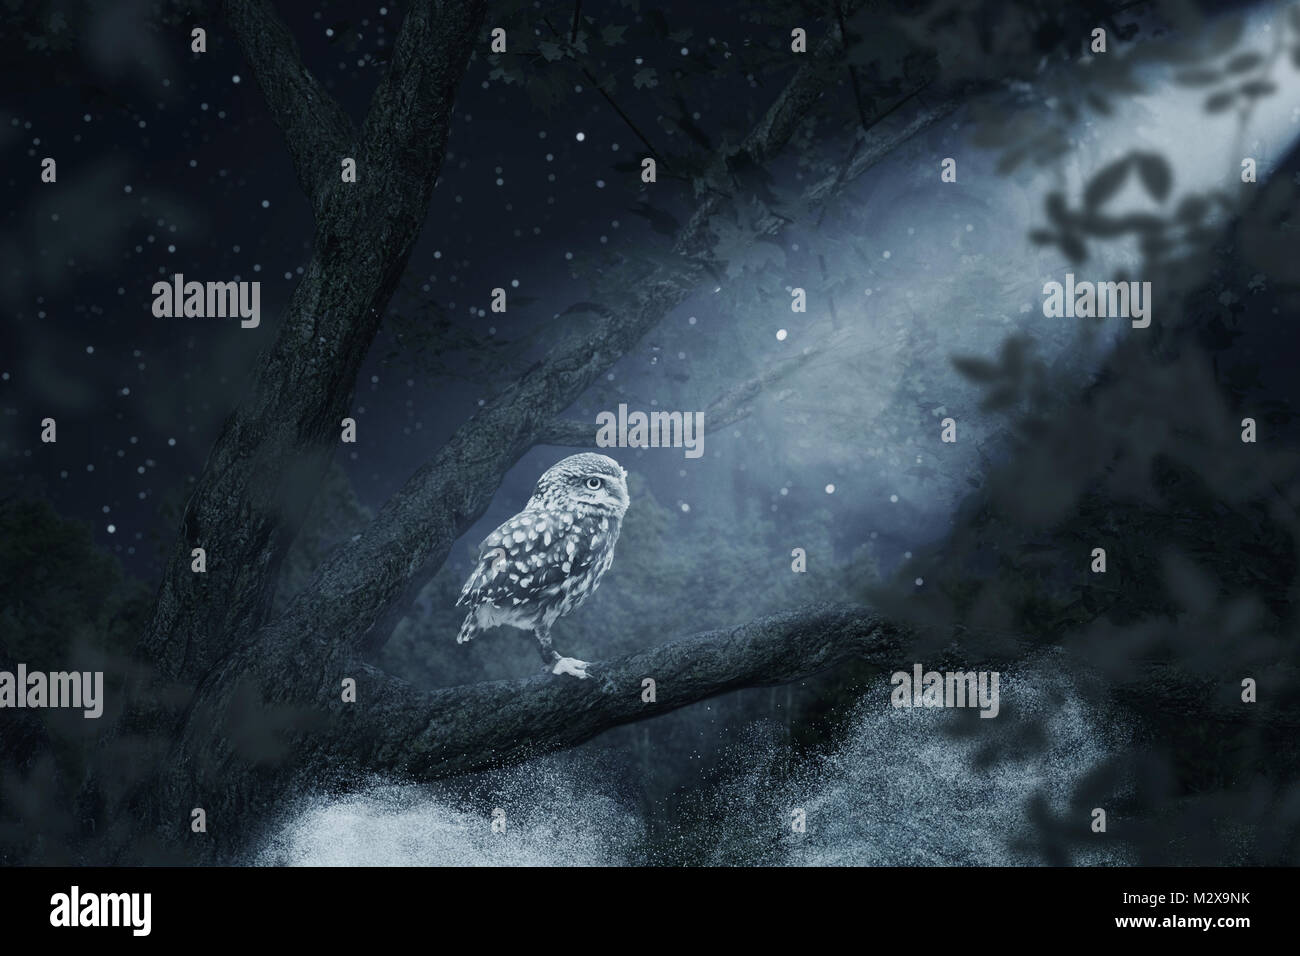 Risveglio owl seduta su albero illuminato dal chiaro di luna Foto Stock